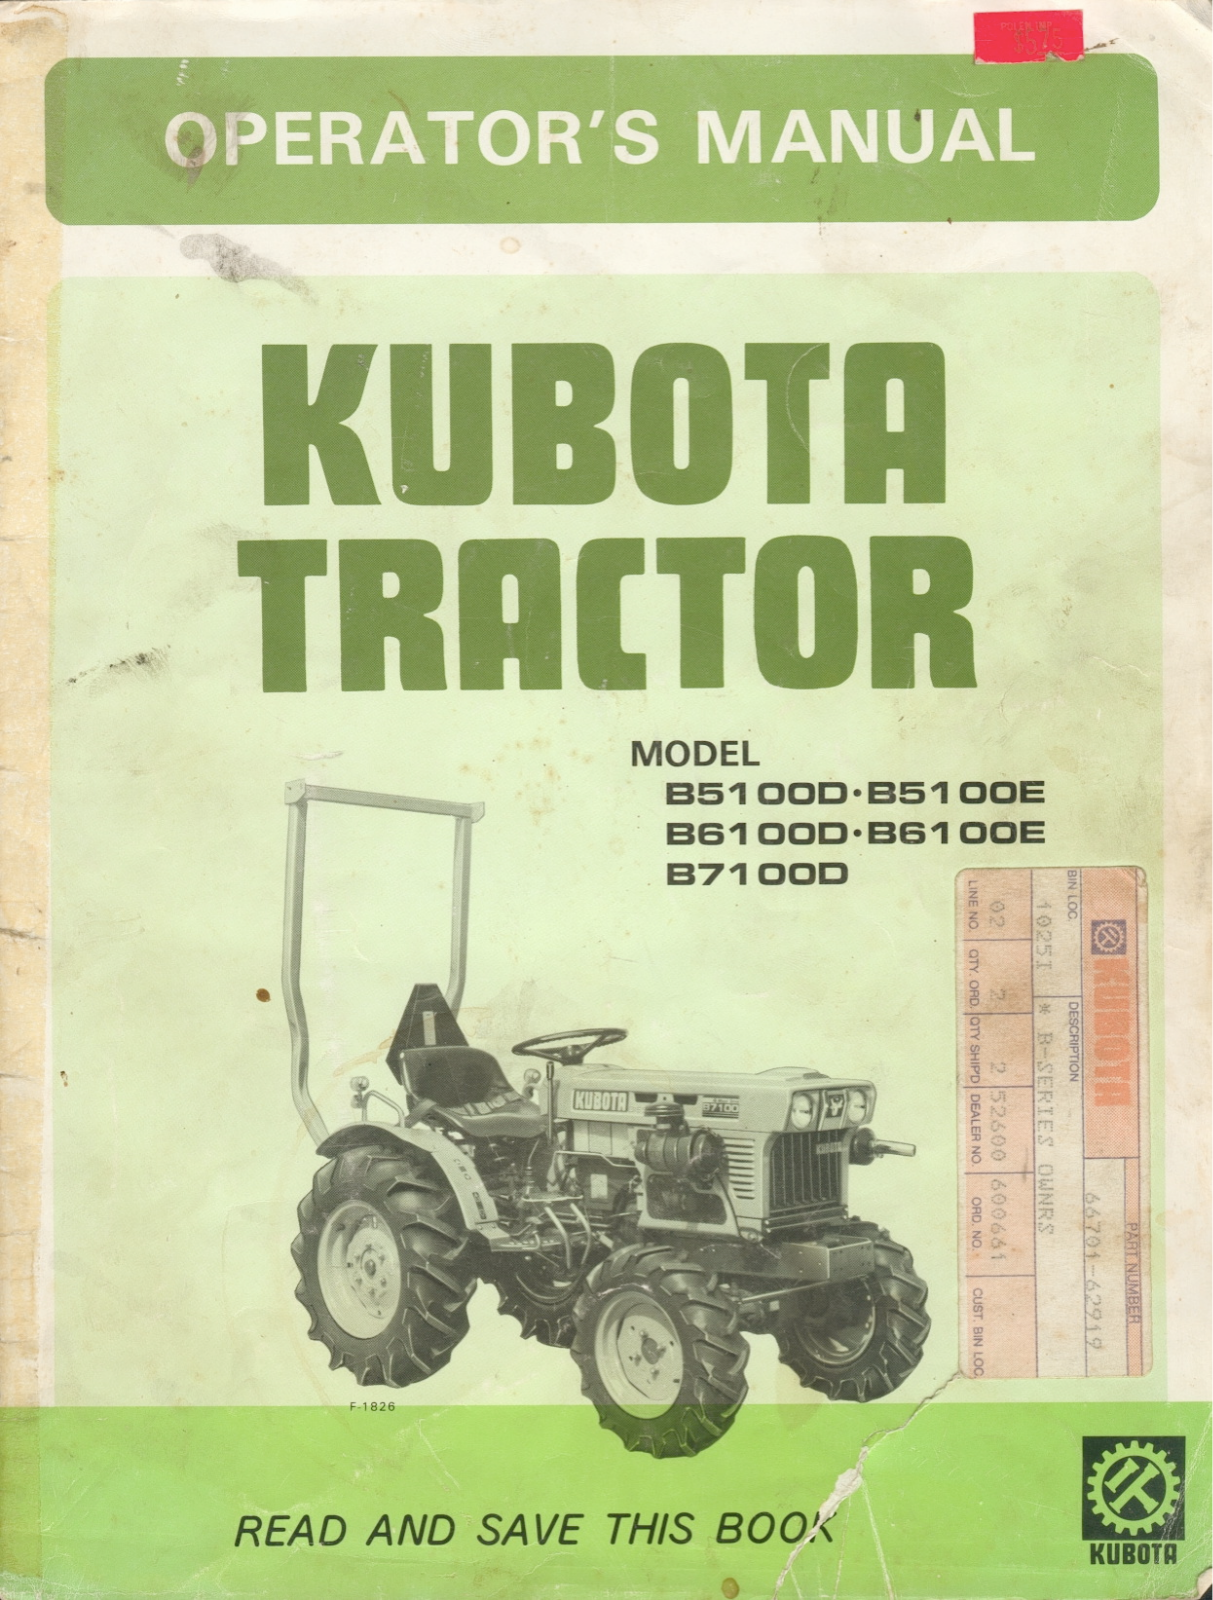 Kubota B5100D-E, B6100D-E, B7100D Operators Manual